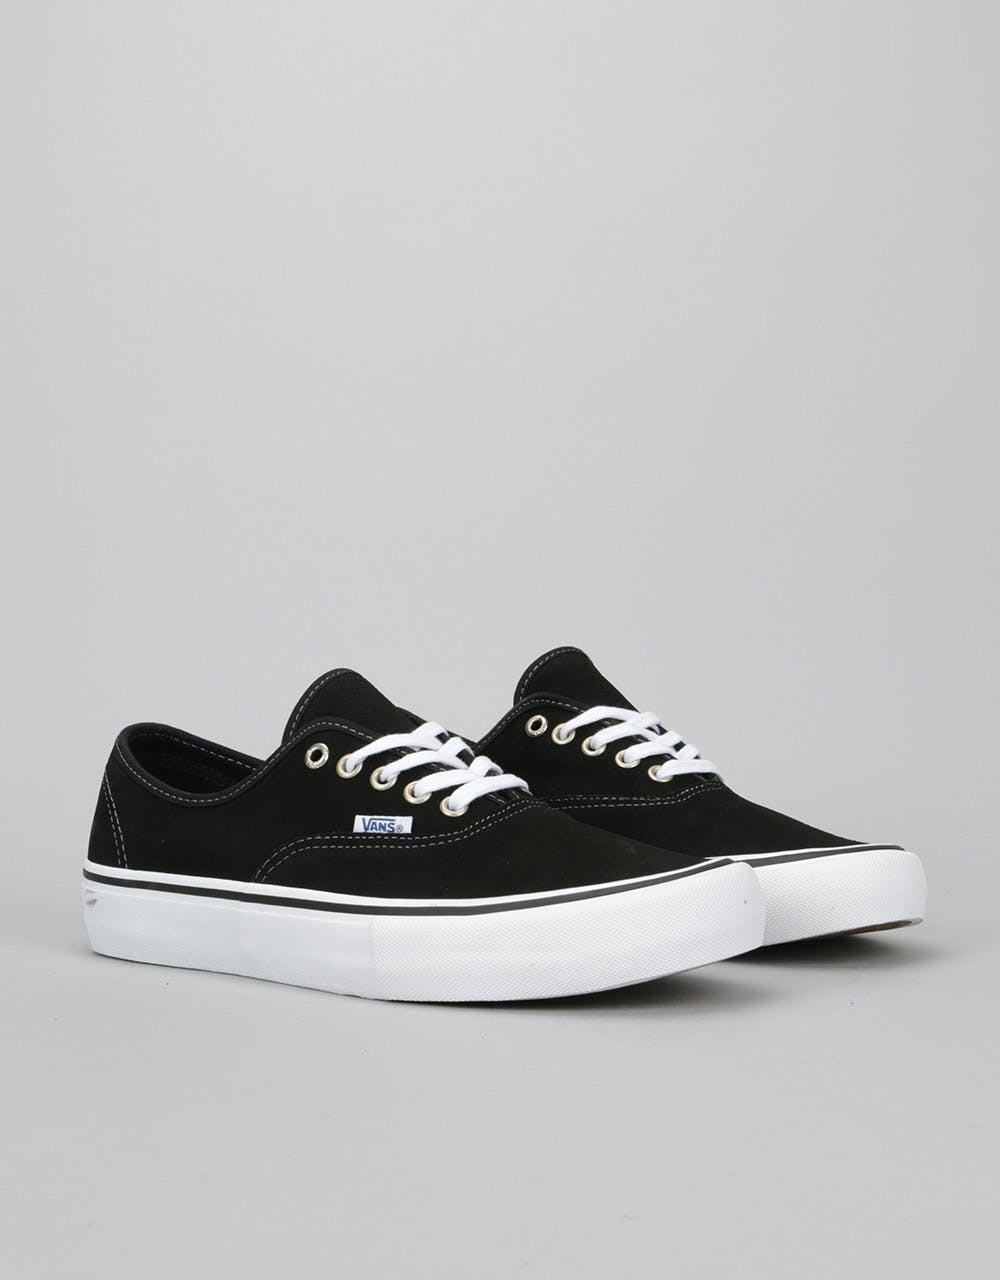 Vans Authentic Pro Skate Shoes - Black Suede